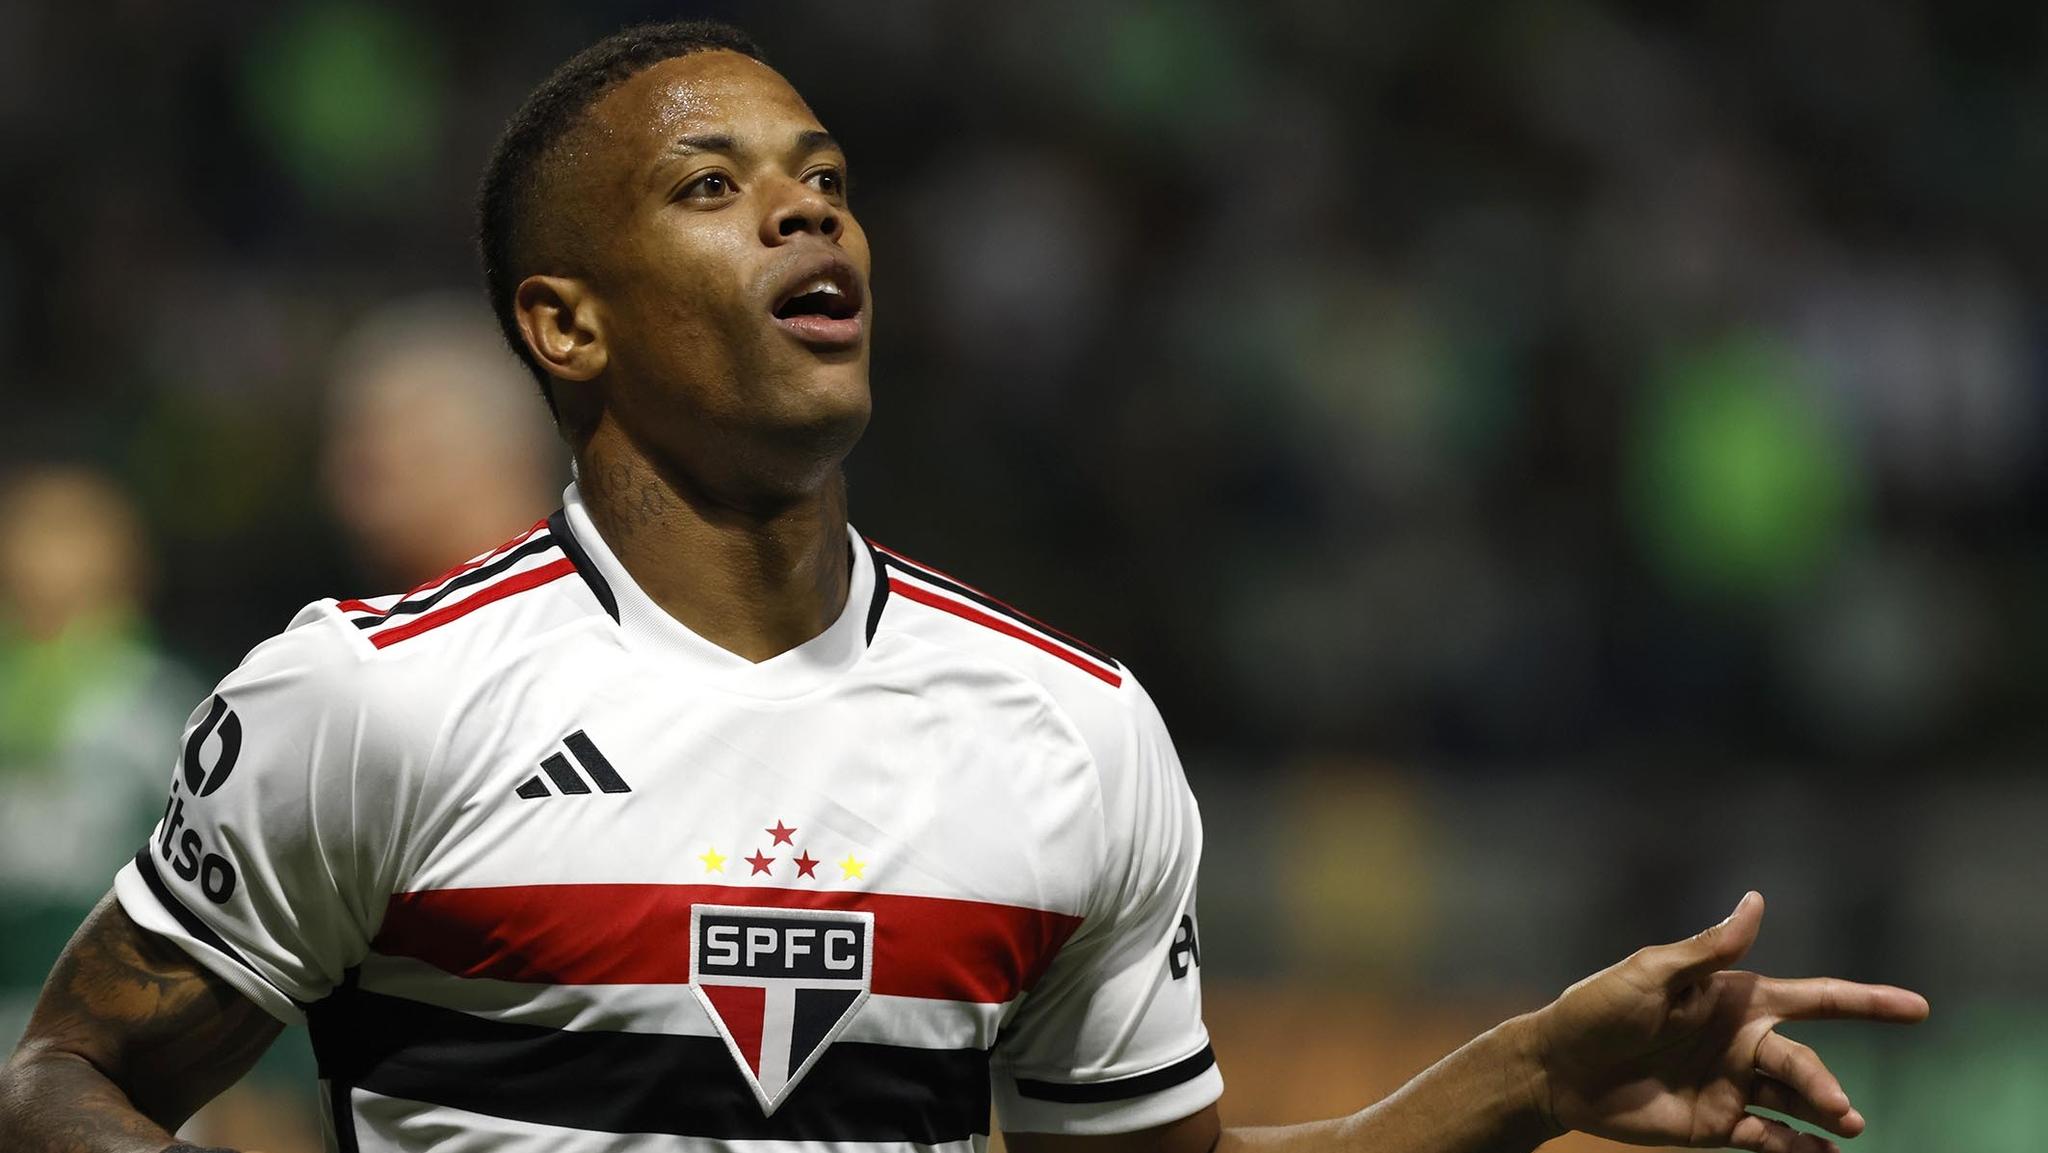 Relembre 10 dos principais jogadores revelados pelo São Paulo - ESPORTE -  Br - Futboo.com